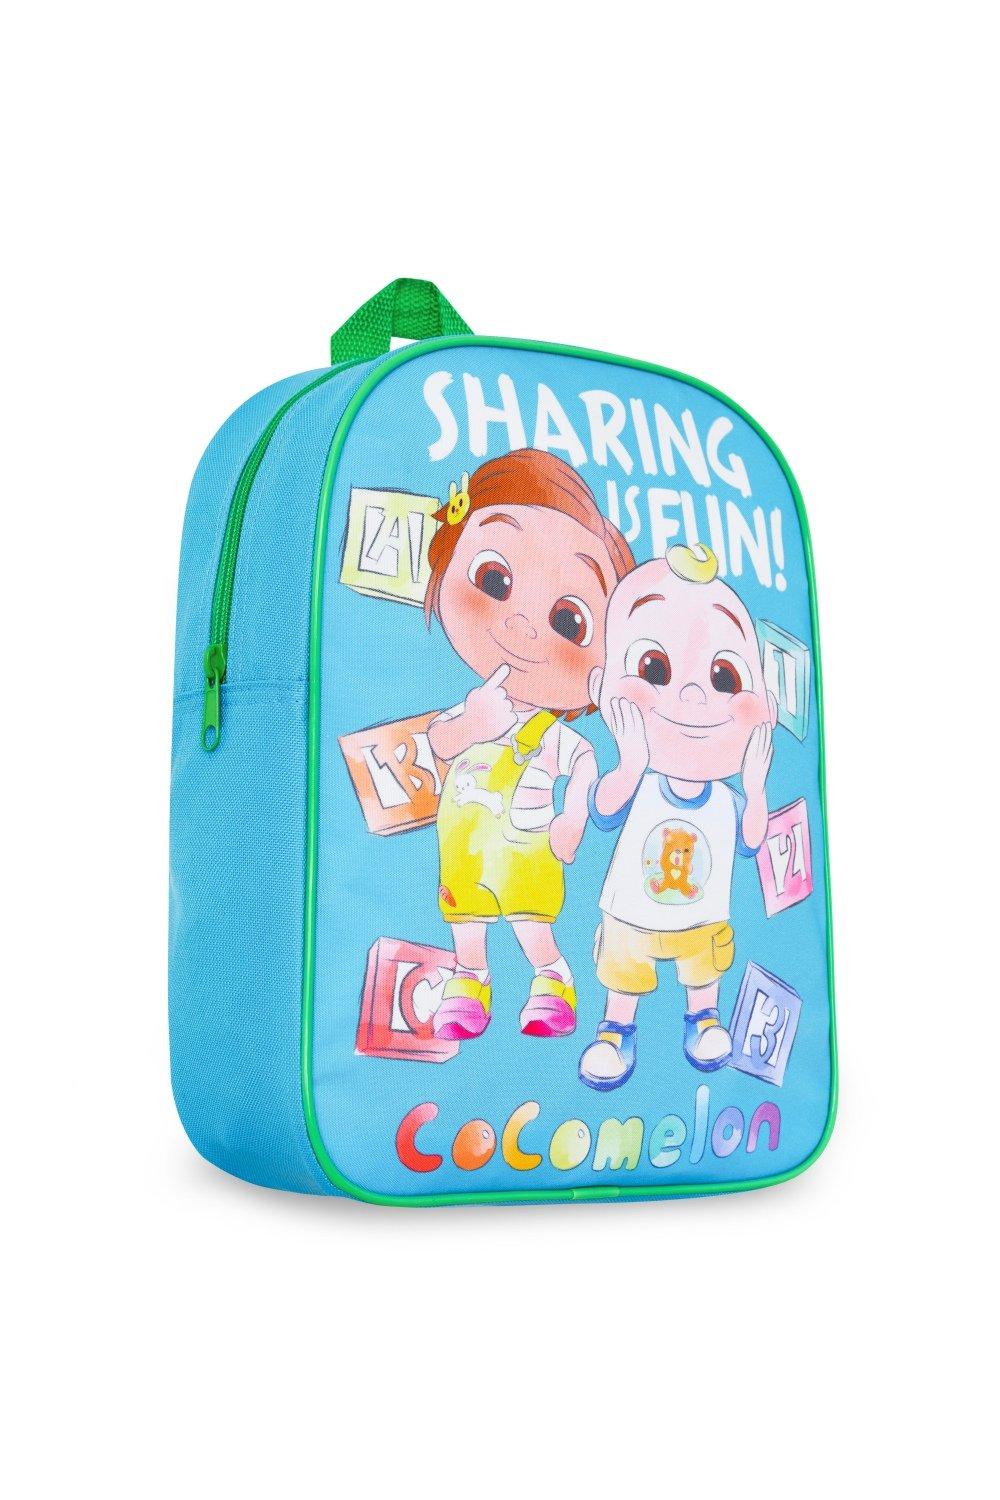 Графический рюкзак 30 x 24 x 9 см Cocomelon, мультиколор милый школьный рюкзак disney toy story sullivan для мальчиков и девочек с тремя глазами рюкзак для колледжа